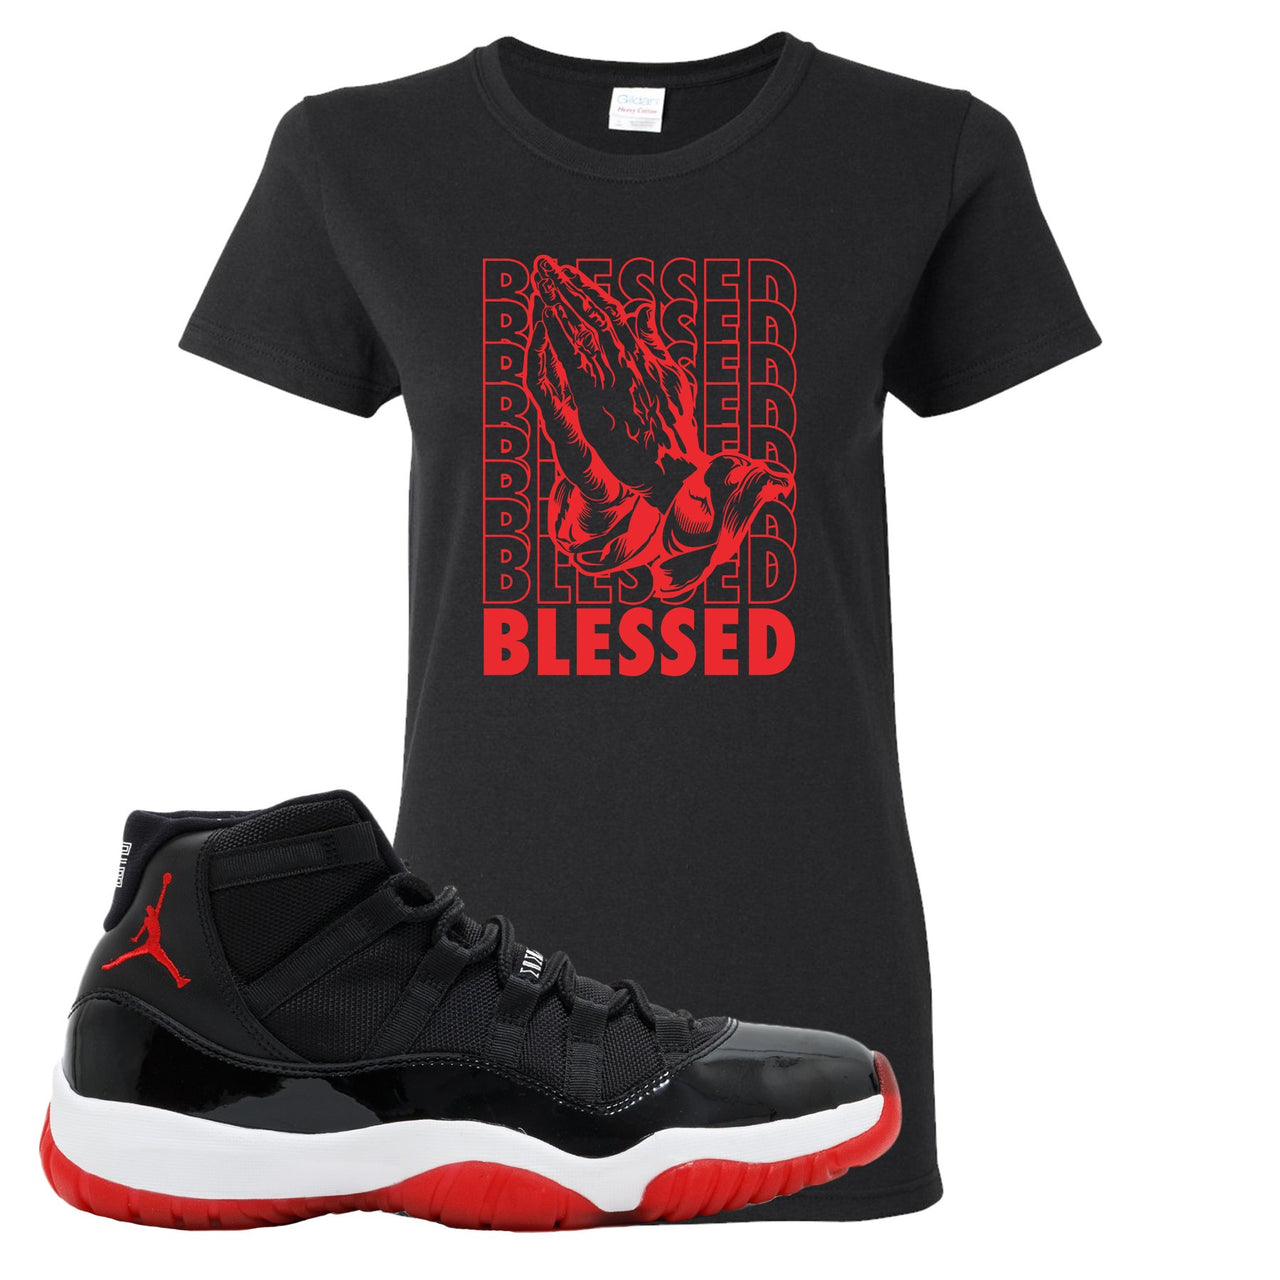 Jordan 11 Bred Blessed Black Sneaker Hook Up Women's T-Shirt